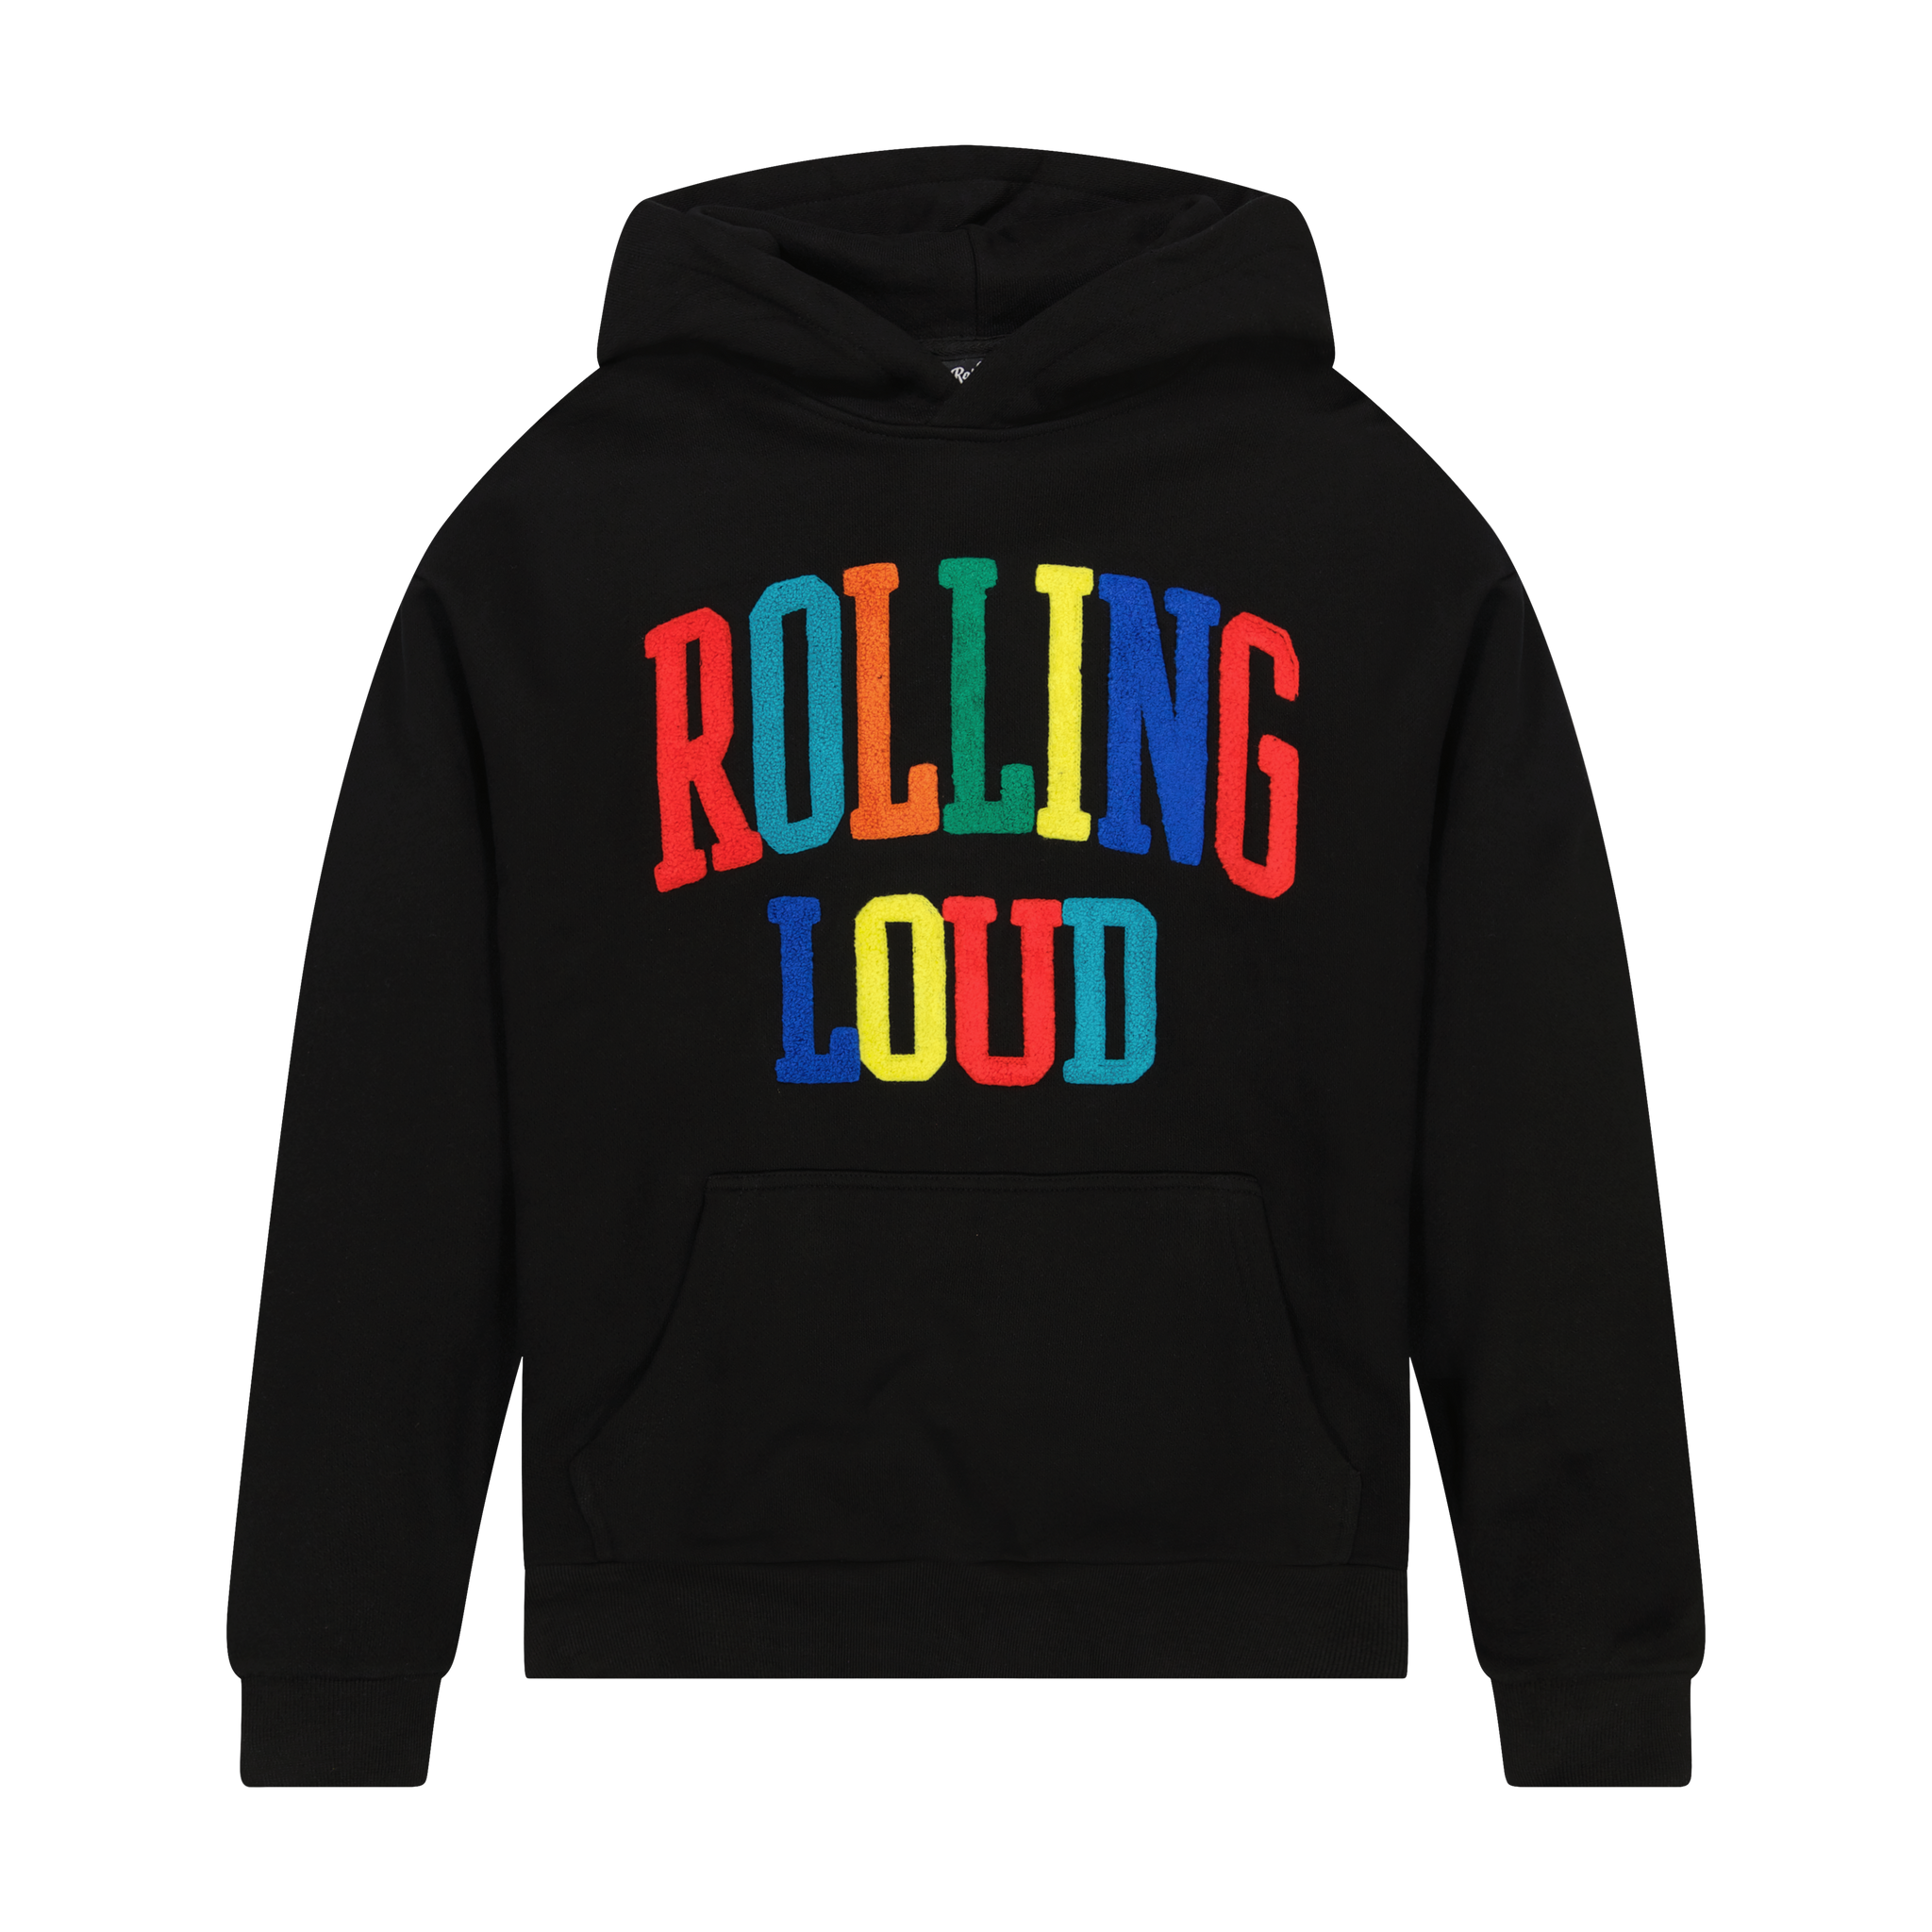 Rolling Loud Multi Chenille Black Hooded Sweatshirt